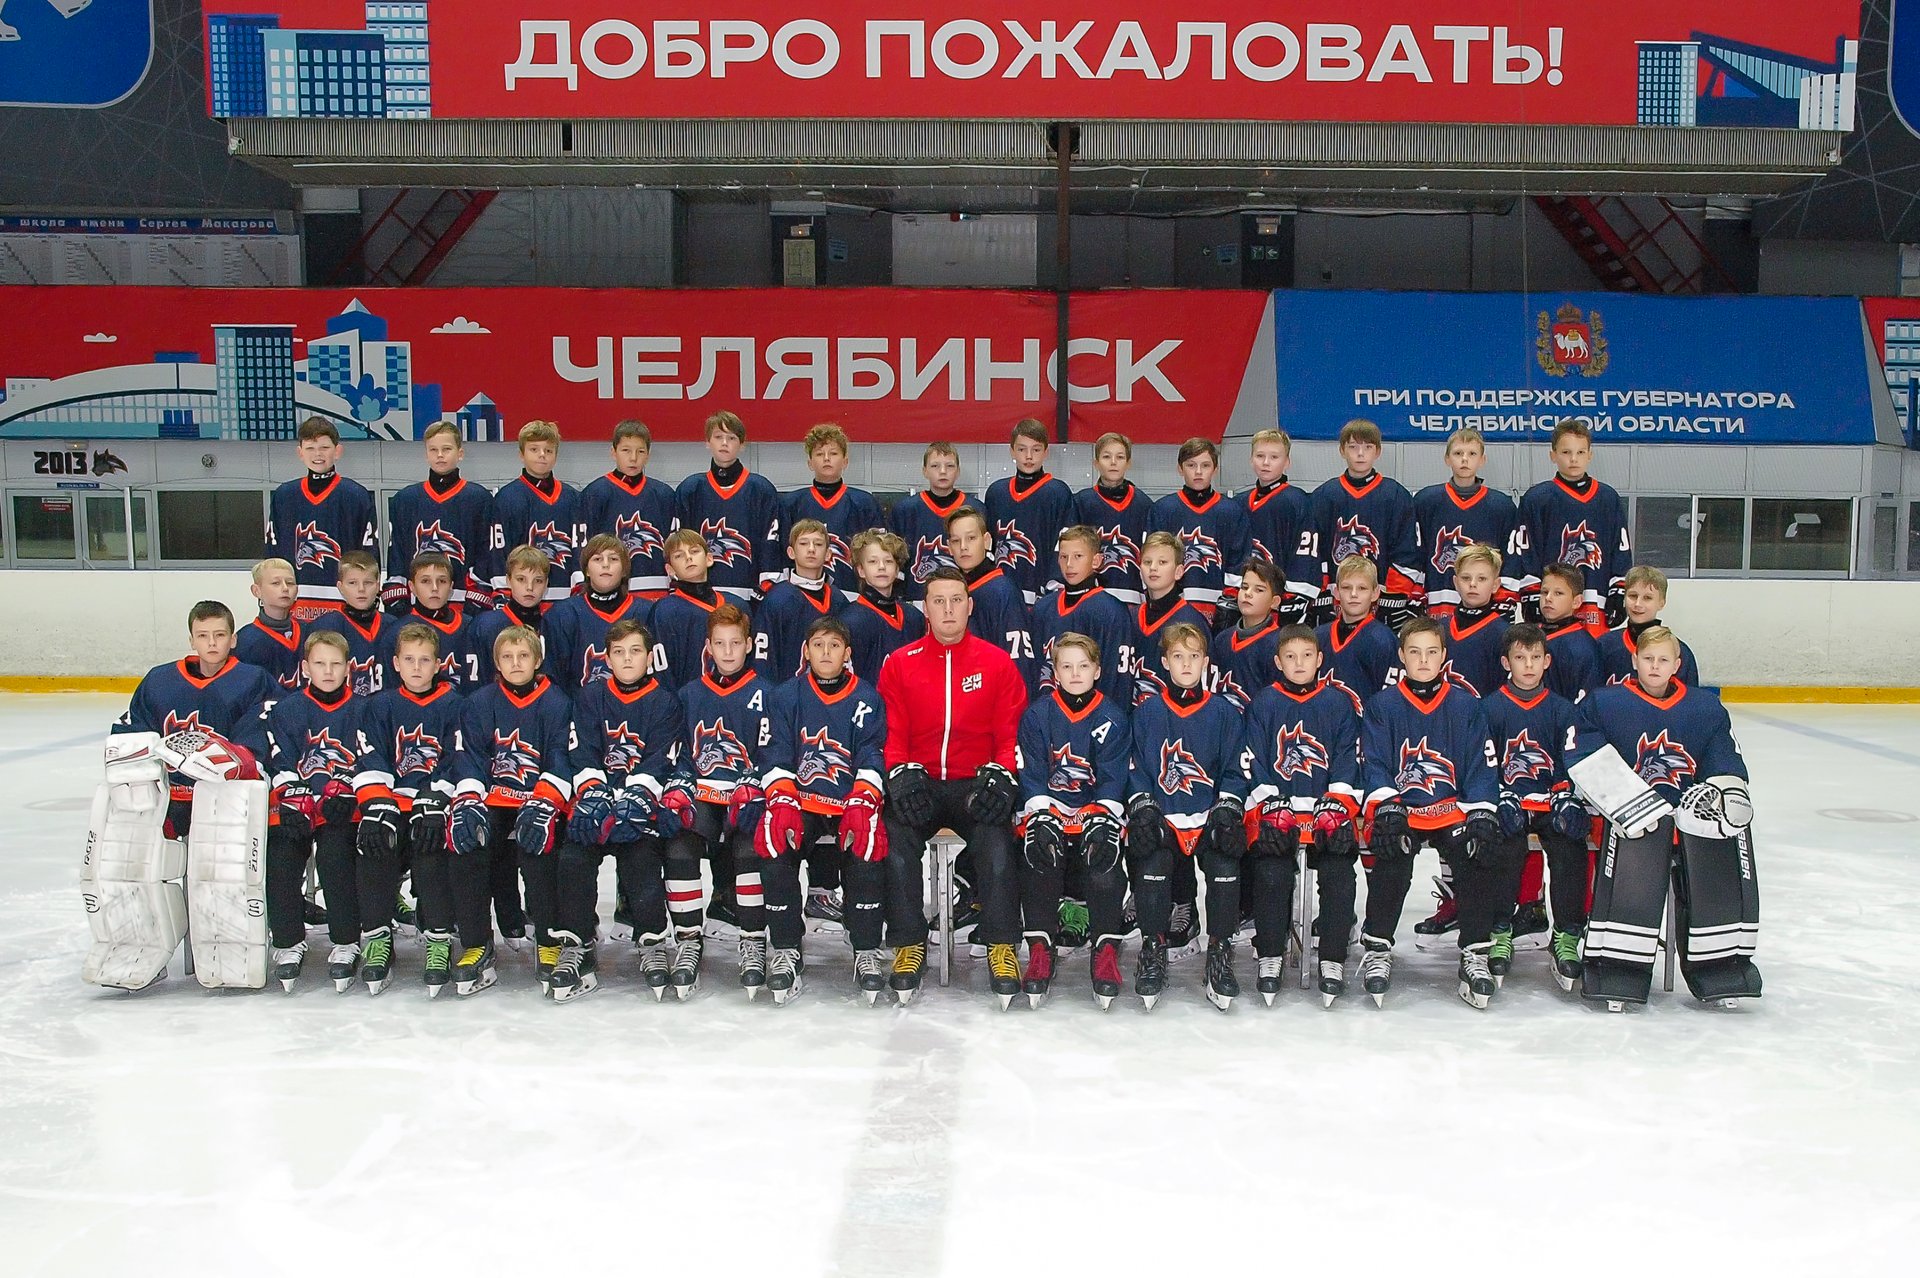 Чемпионат мхл 2023 2024 результат. Челябинск 2011 год. Хоккейная команда молодцы картинка.